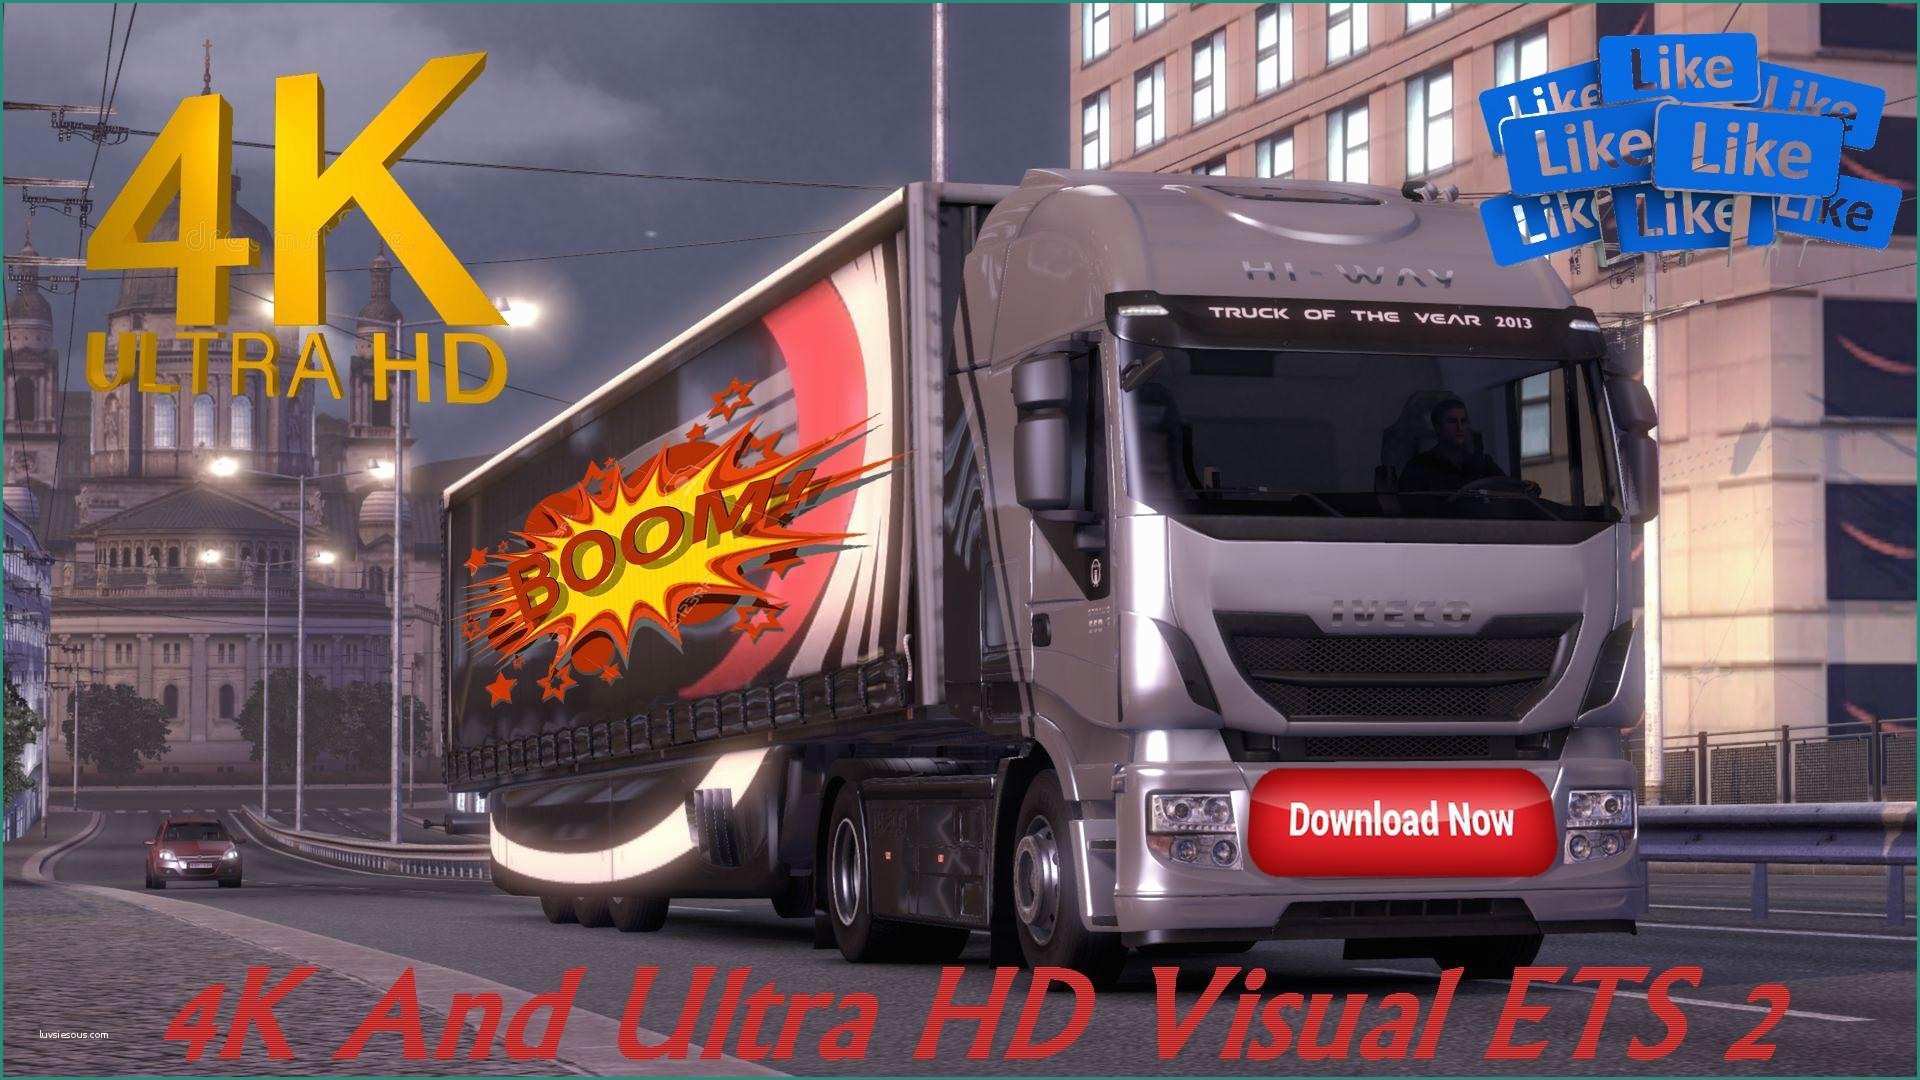 Sfondi Ultra Hd K E 4k and Ultra Hd Visual Ets 2 V1 0 Mod Euro Truck Simulator 2 Mods